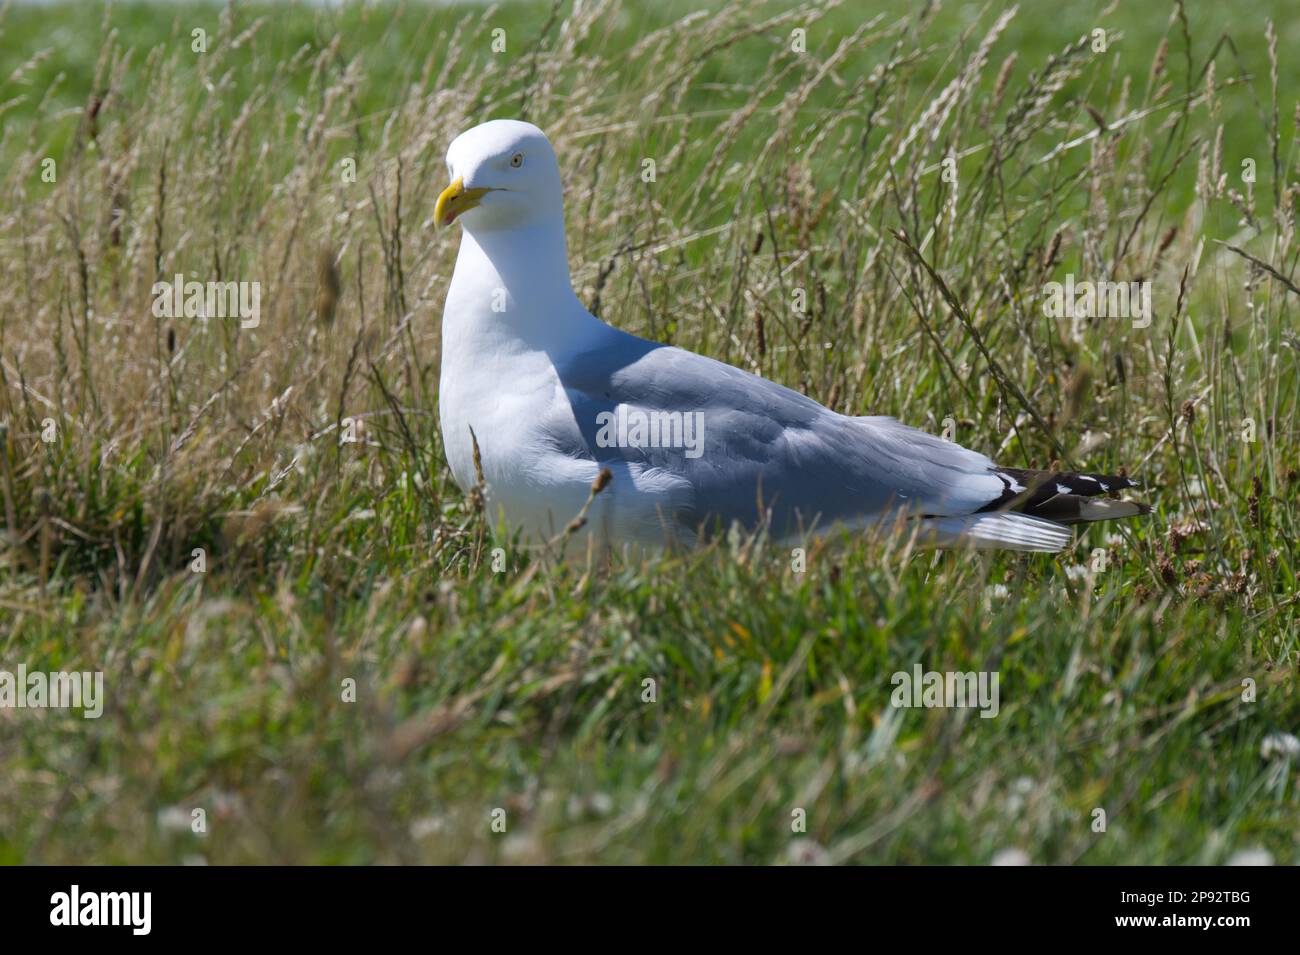 Herring gull in grass Stock Photo